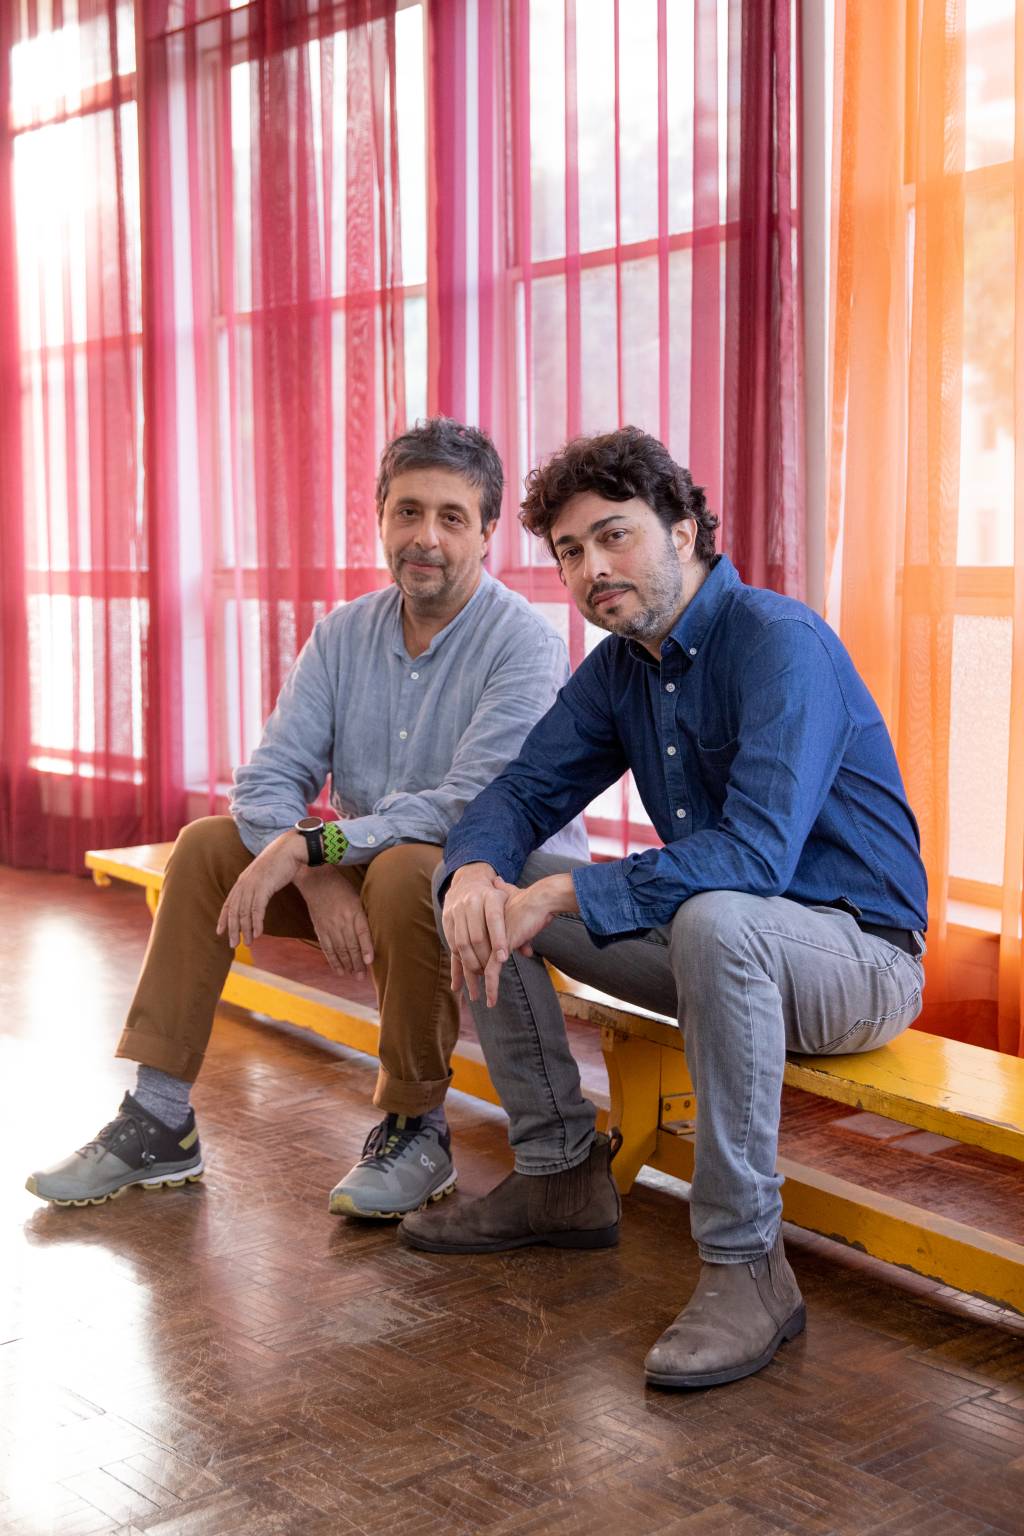 Dois homens brancos posam sentados em frente a cortina vermelha